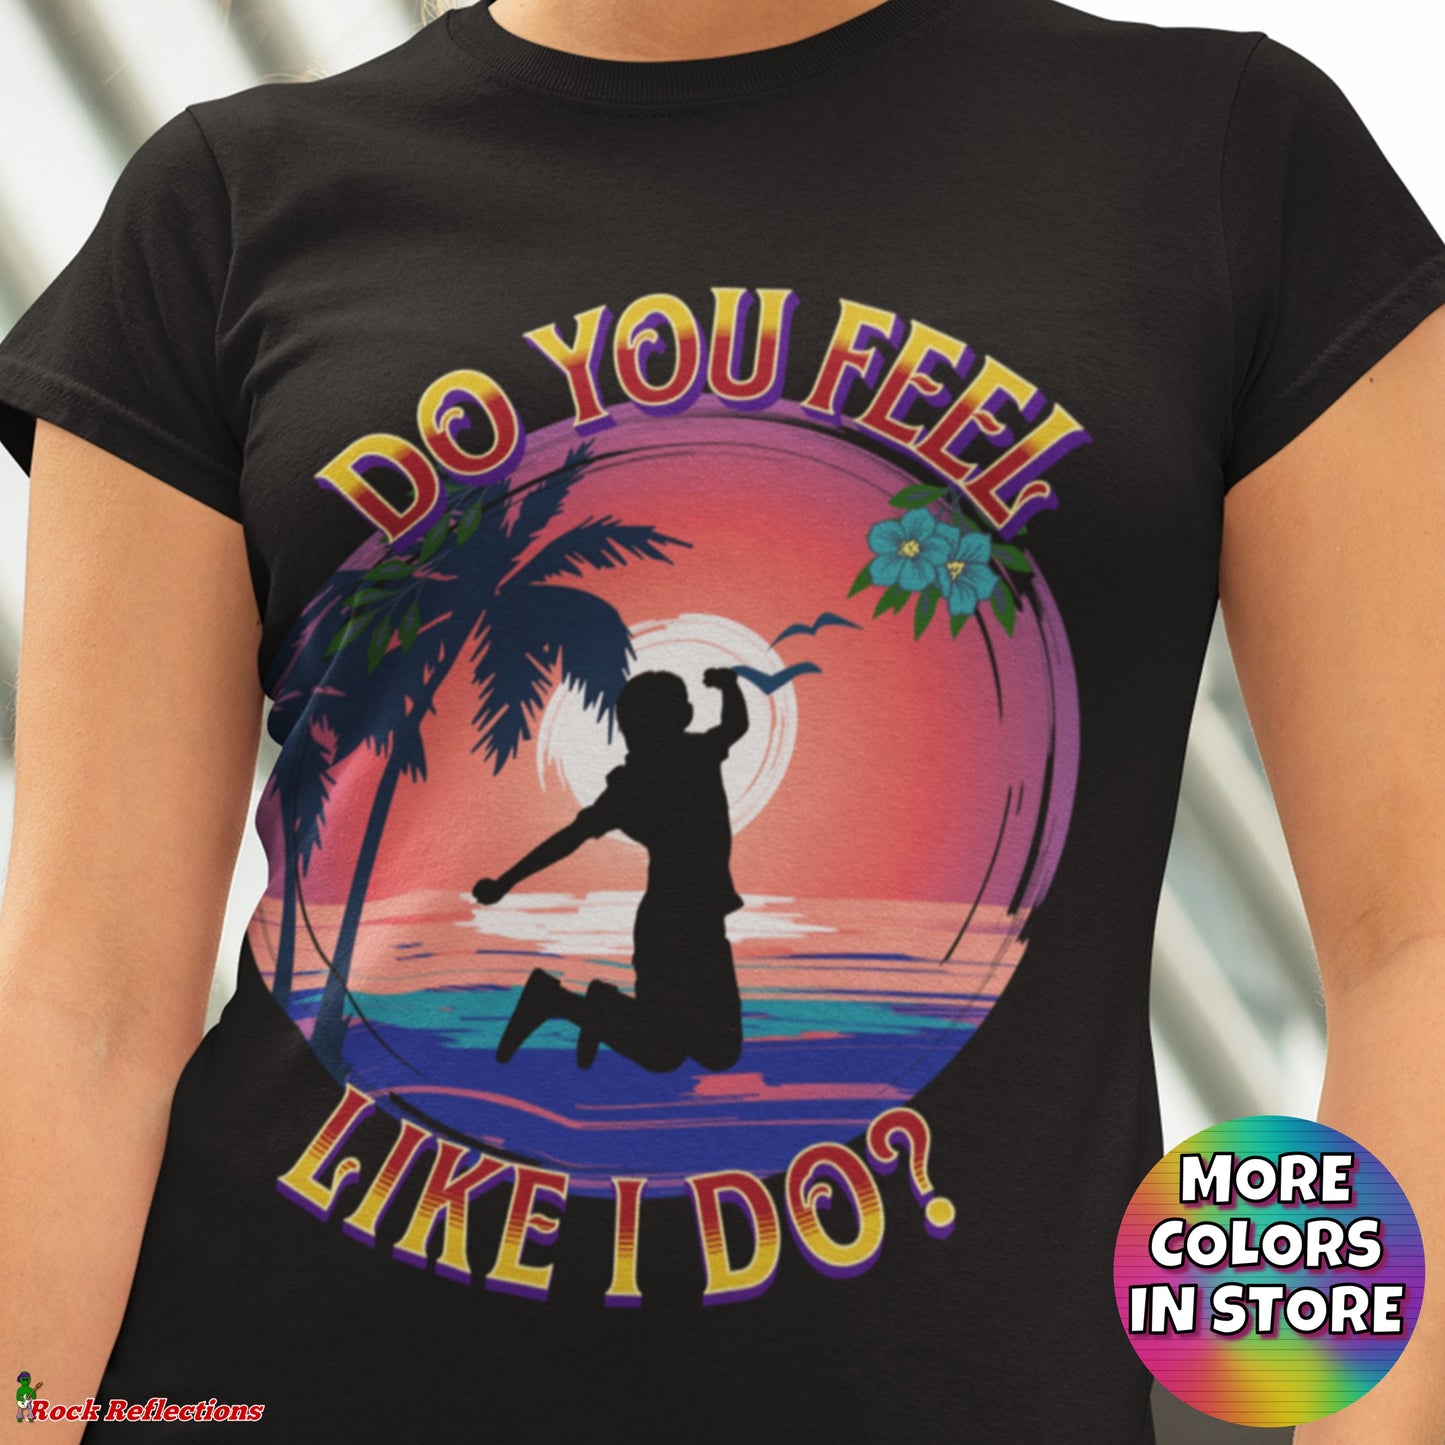 Do You Feel Like I Do? T-Shirt SPOD